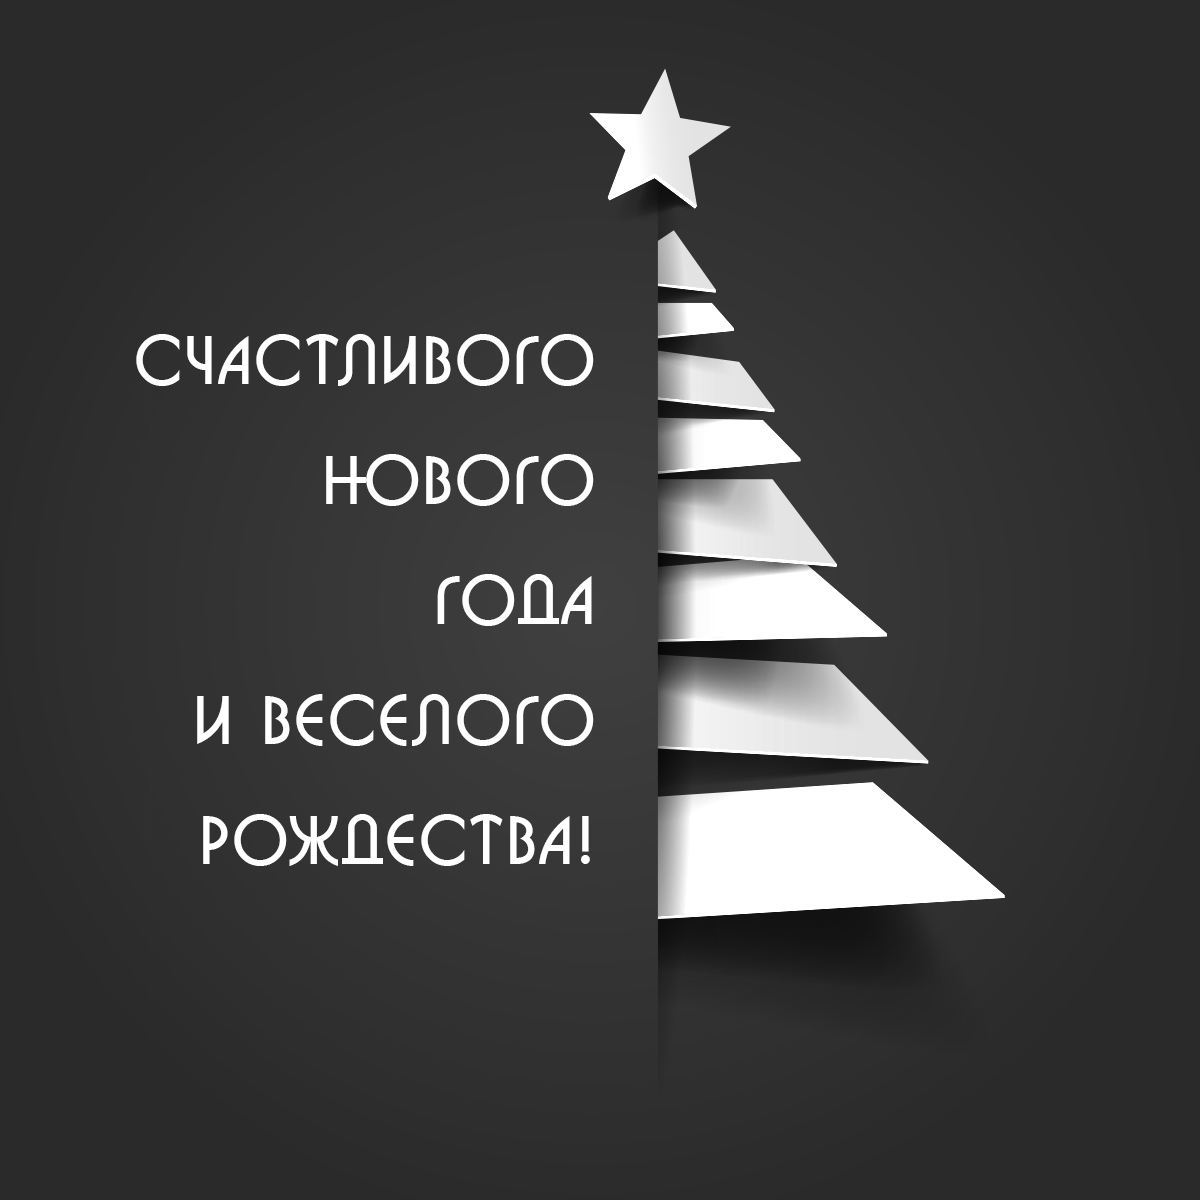 Черно белая картинка на Новый Год ёлка со звездой и текстом поздравления.